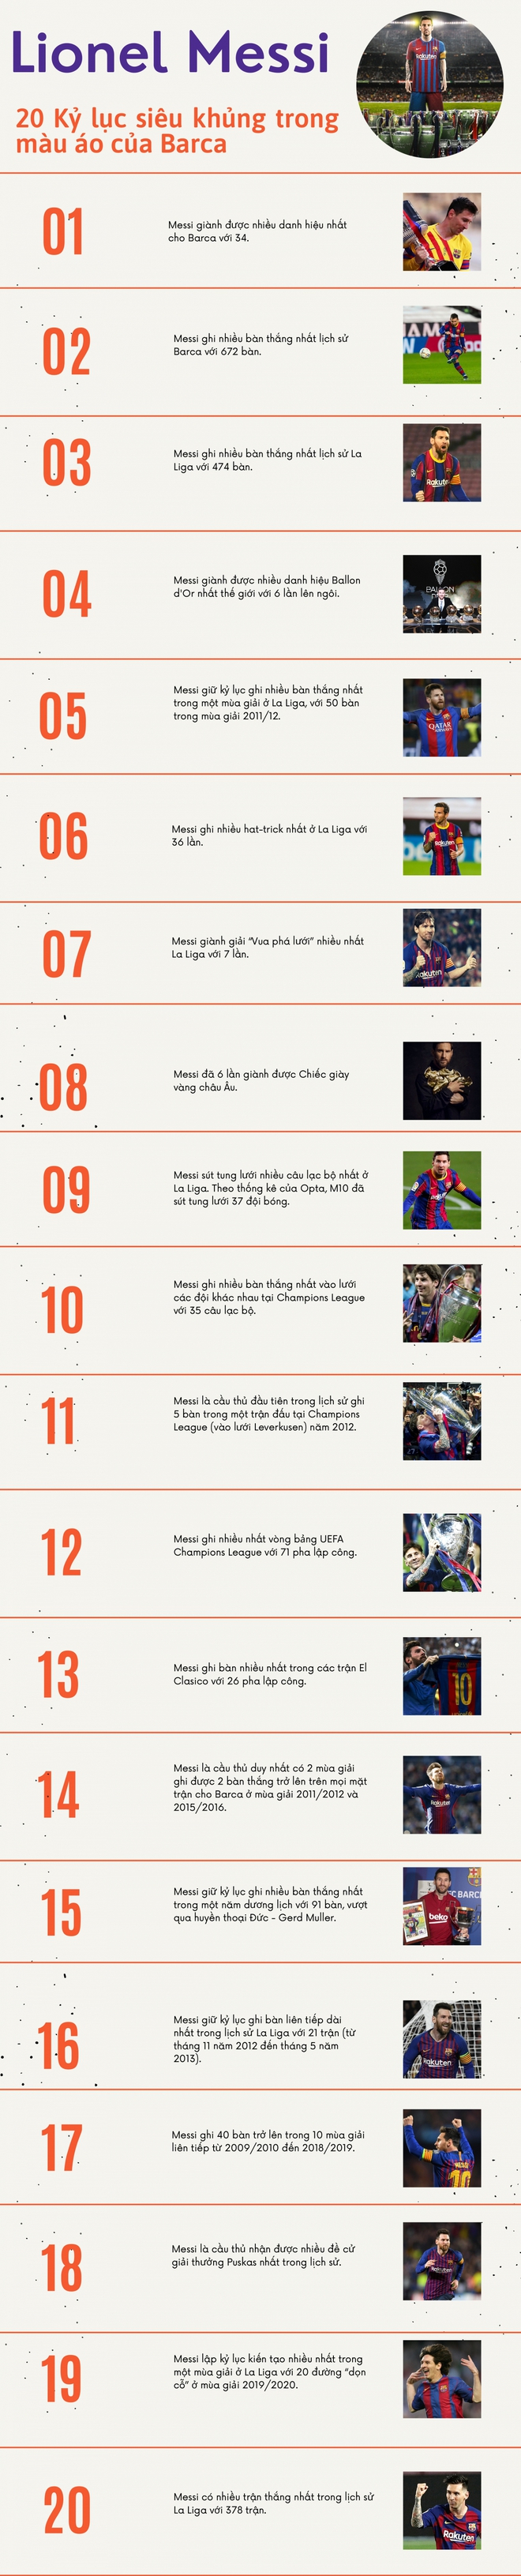 20 kỷ lục “siêu khủng” của Messi trong màu áo Barca - Ảnh 1.